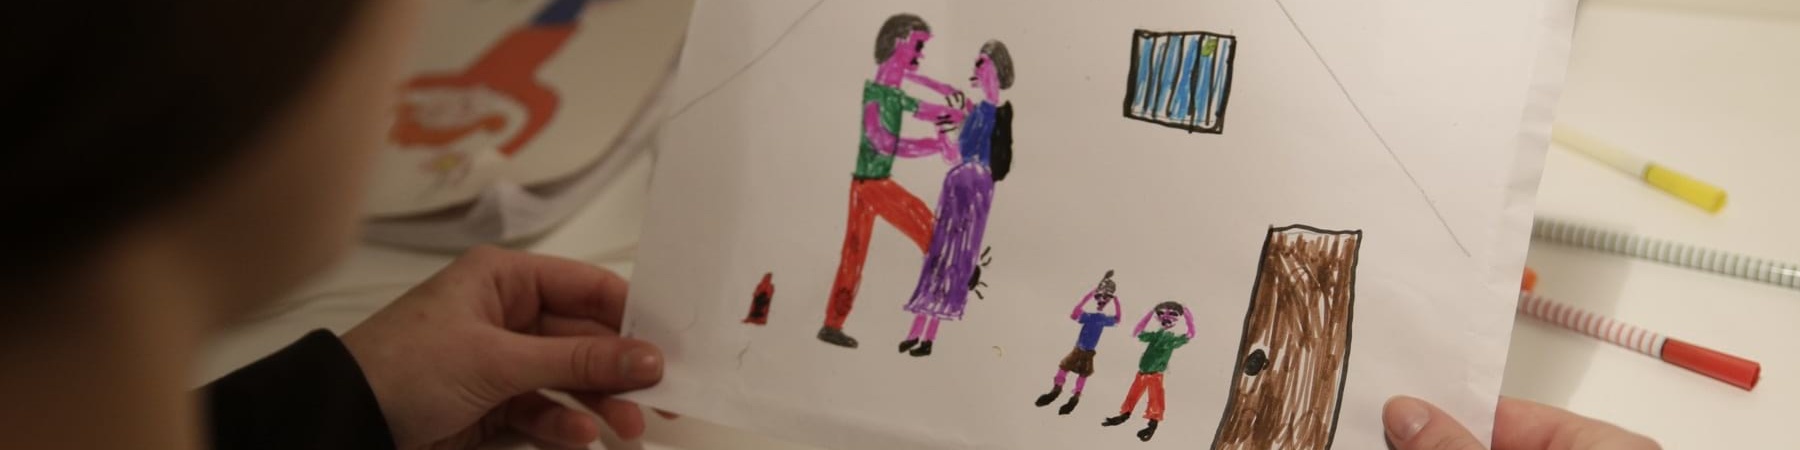 Bambina di spalle tiene in mano un disegno che rappresenta una scena di violenza domestica e assistita